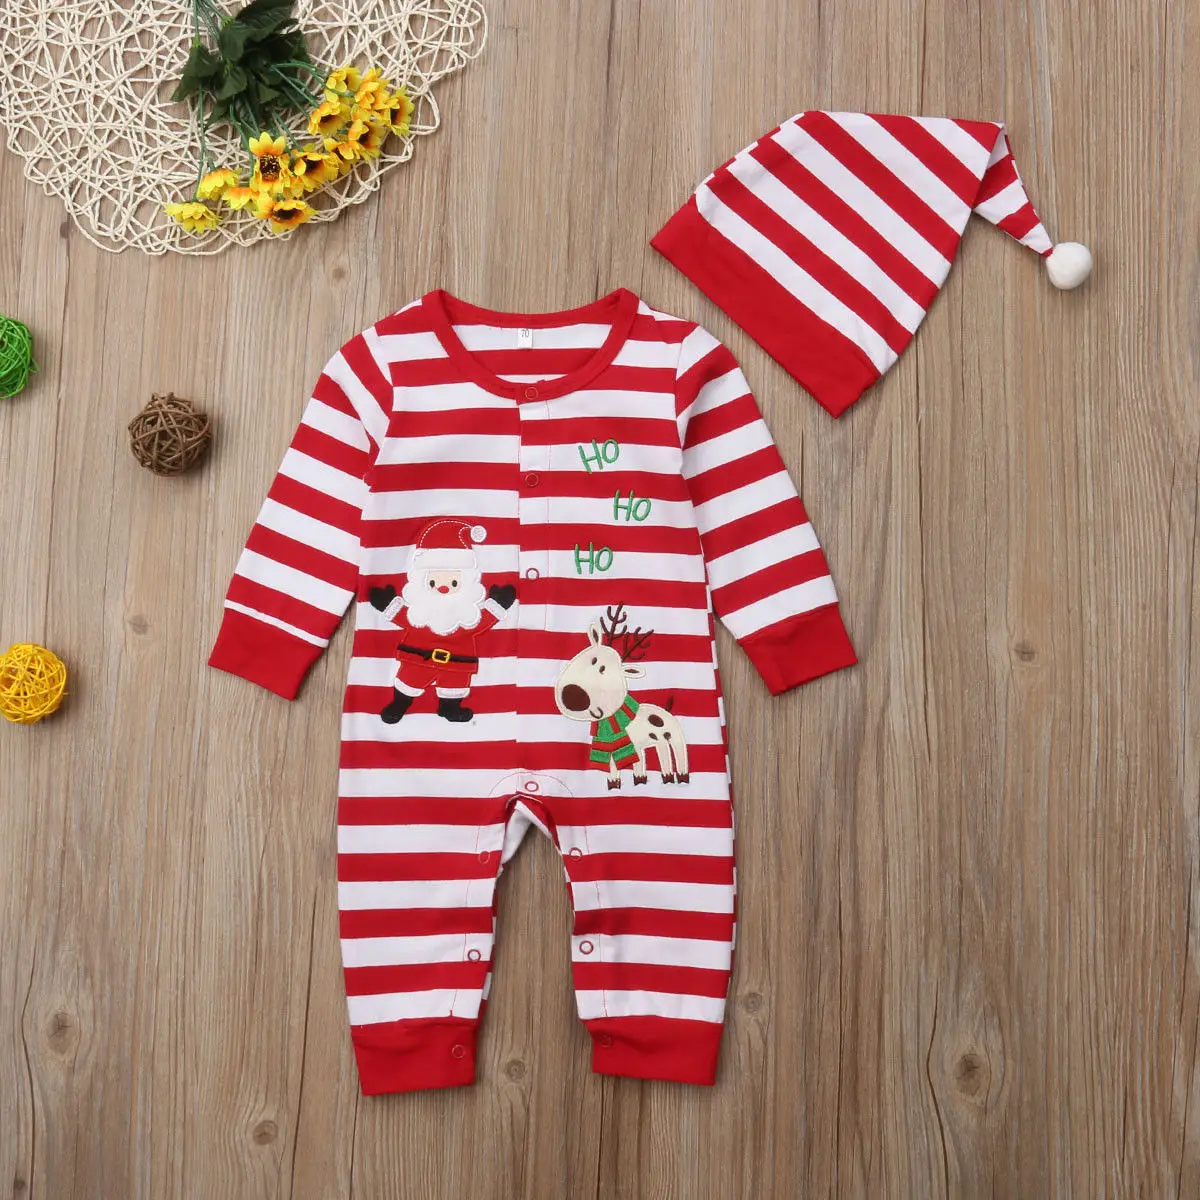 Бренд Multitrust Рождество новорожденный комбинезон для младенцев мальчиков девочек полосатый Санта костюм+ шляпа одежда красный Рождественский наряд осенняя одежда